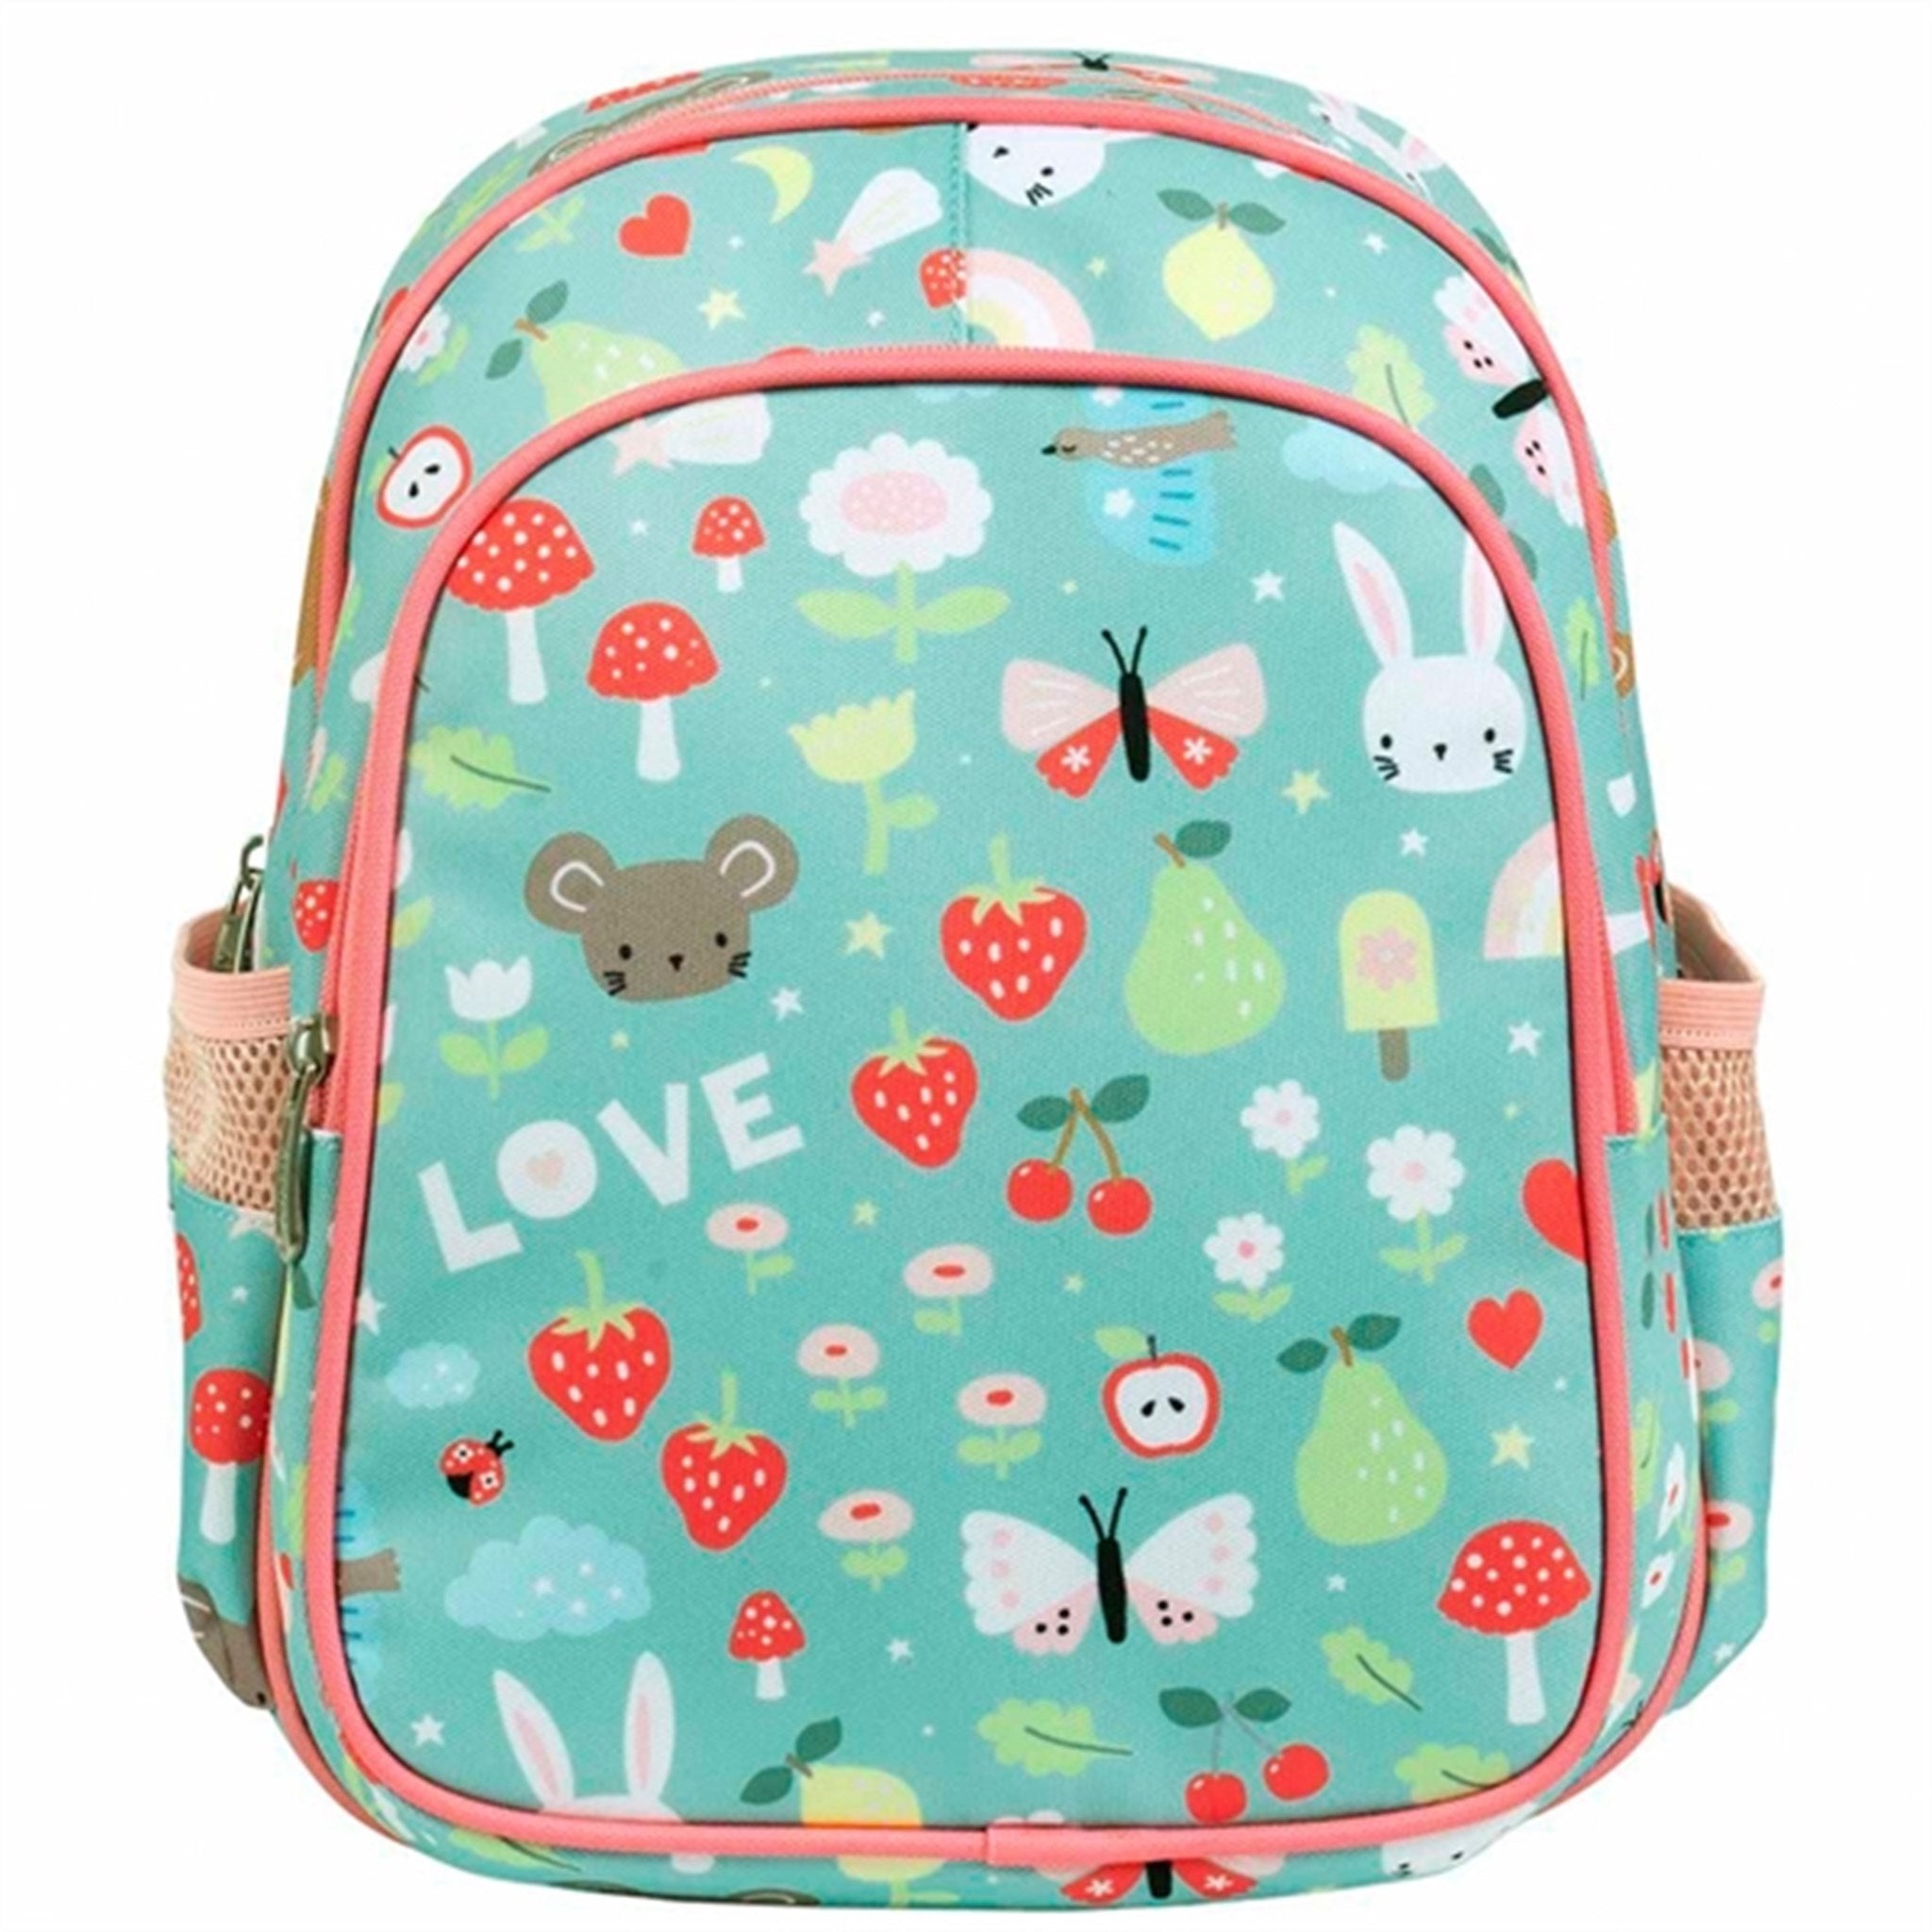 A Little Lovely Company Backpack Joy